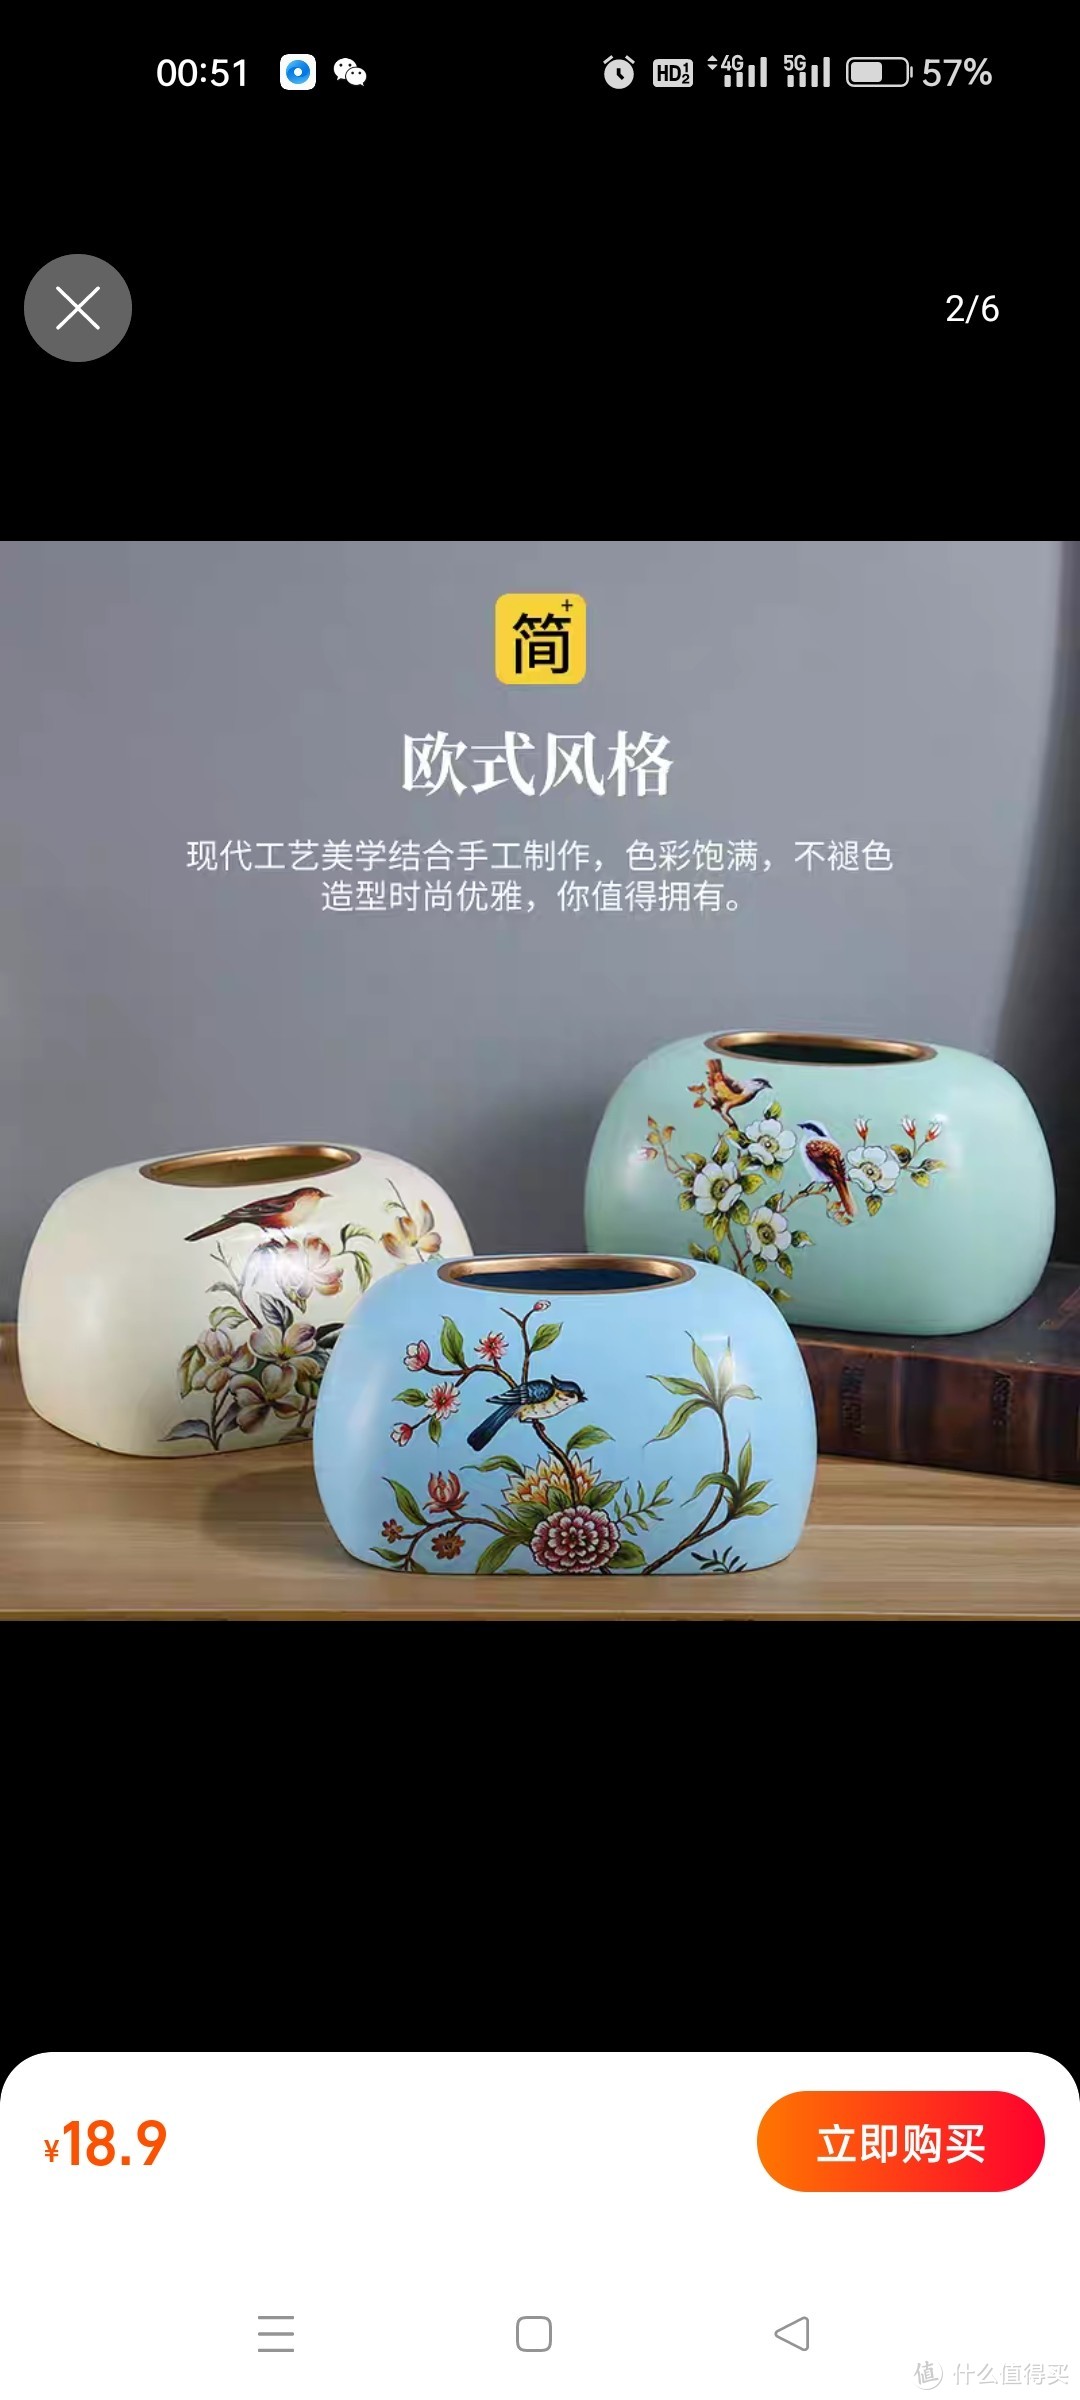 美式纸巾盒摆件简约客厅家用欧式餐巾抽纸盒创意陶瓷茶几收纳轻奢